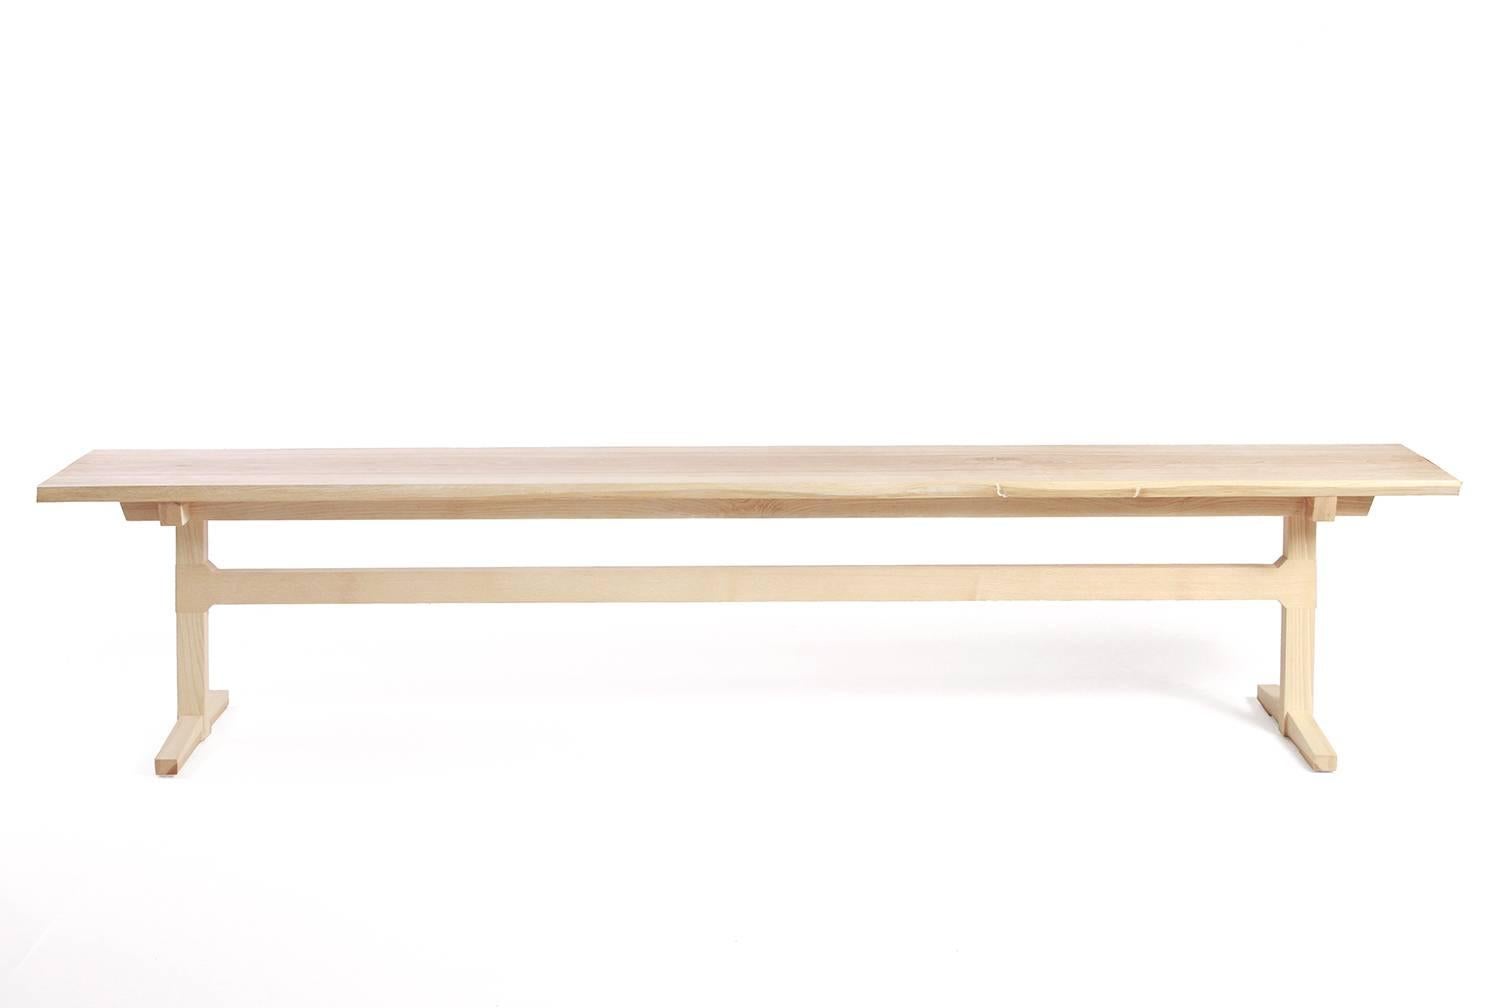 Die Lilliana Bench von New York Heartwoods aus weiß gekalktem Eschenholz weist Einflüsse des Mid-Century Modern Designs und traditionelle Tischlertechniken auf. Seine klaren Linien und sein zeitloses Design passen gut zu unserem Sen Esstisch